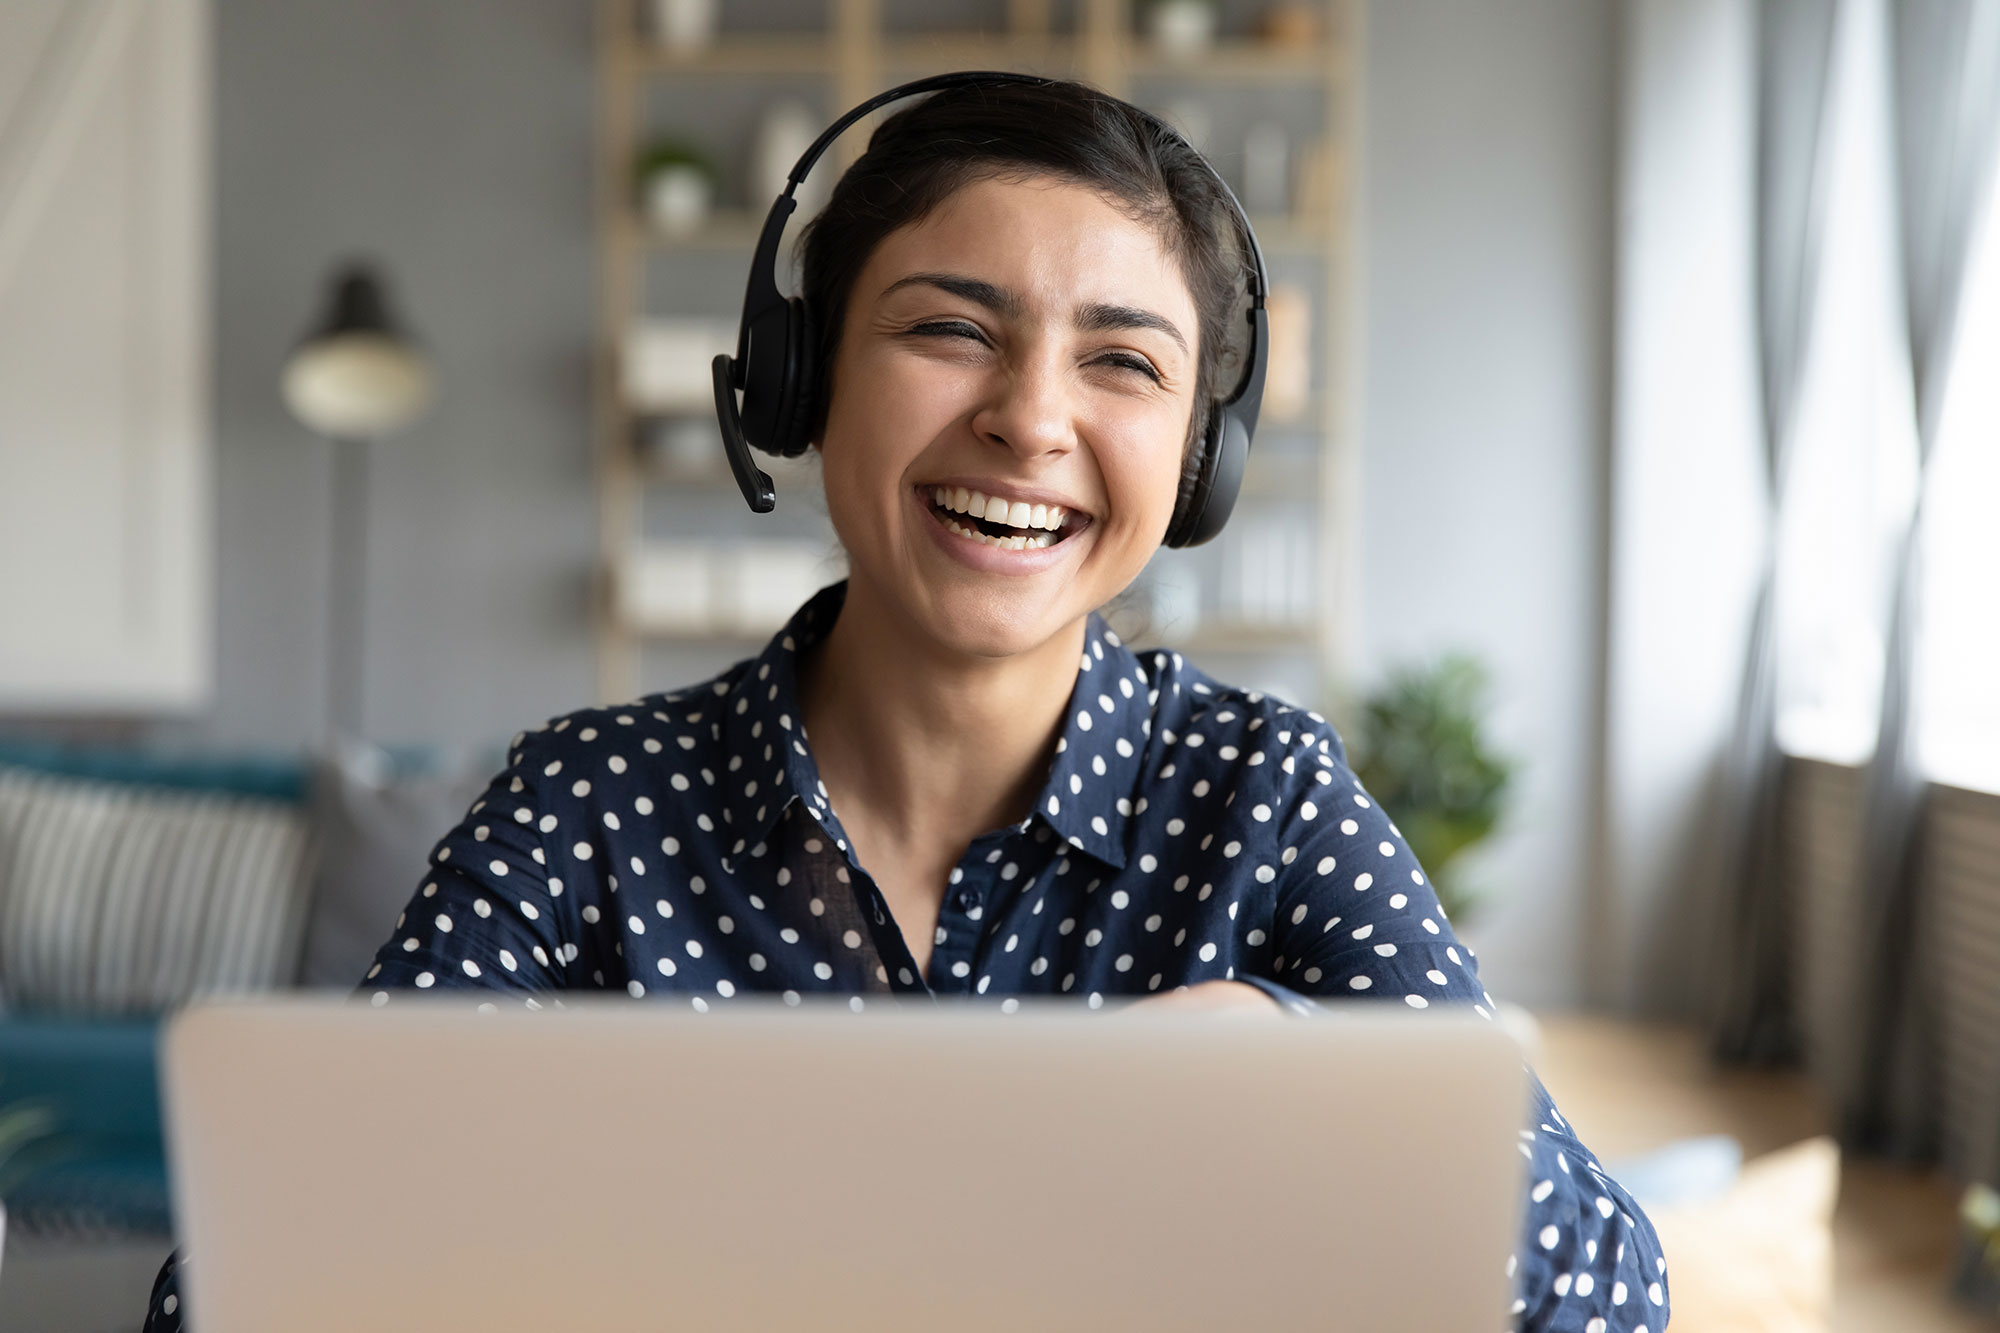 Laughing woman wearing headset working on laptop